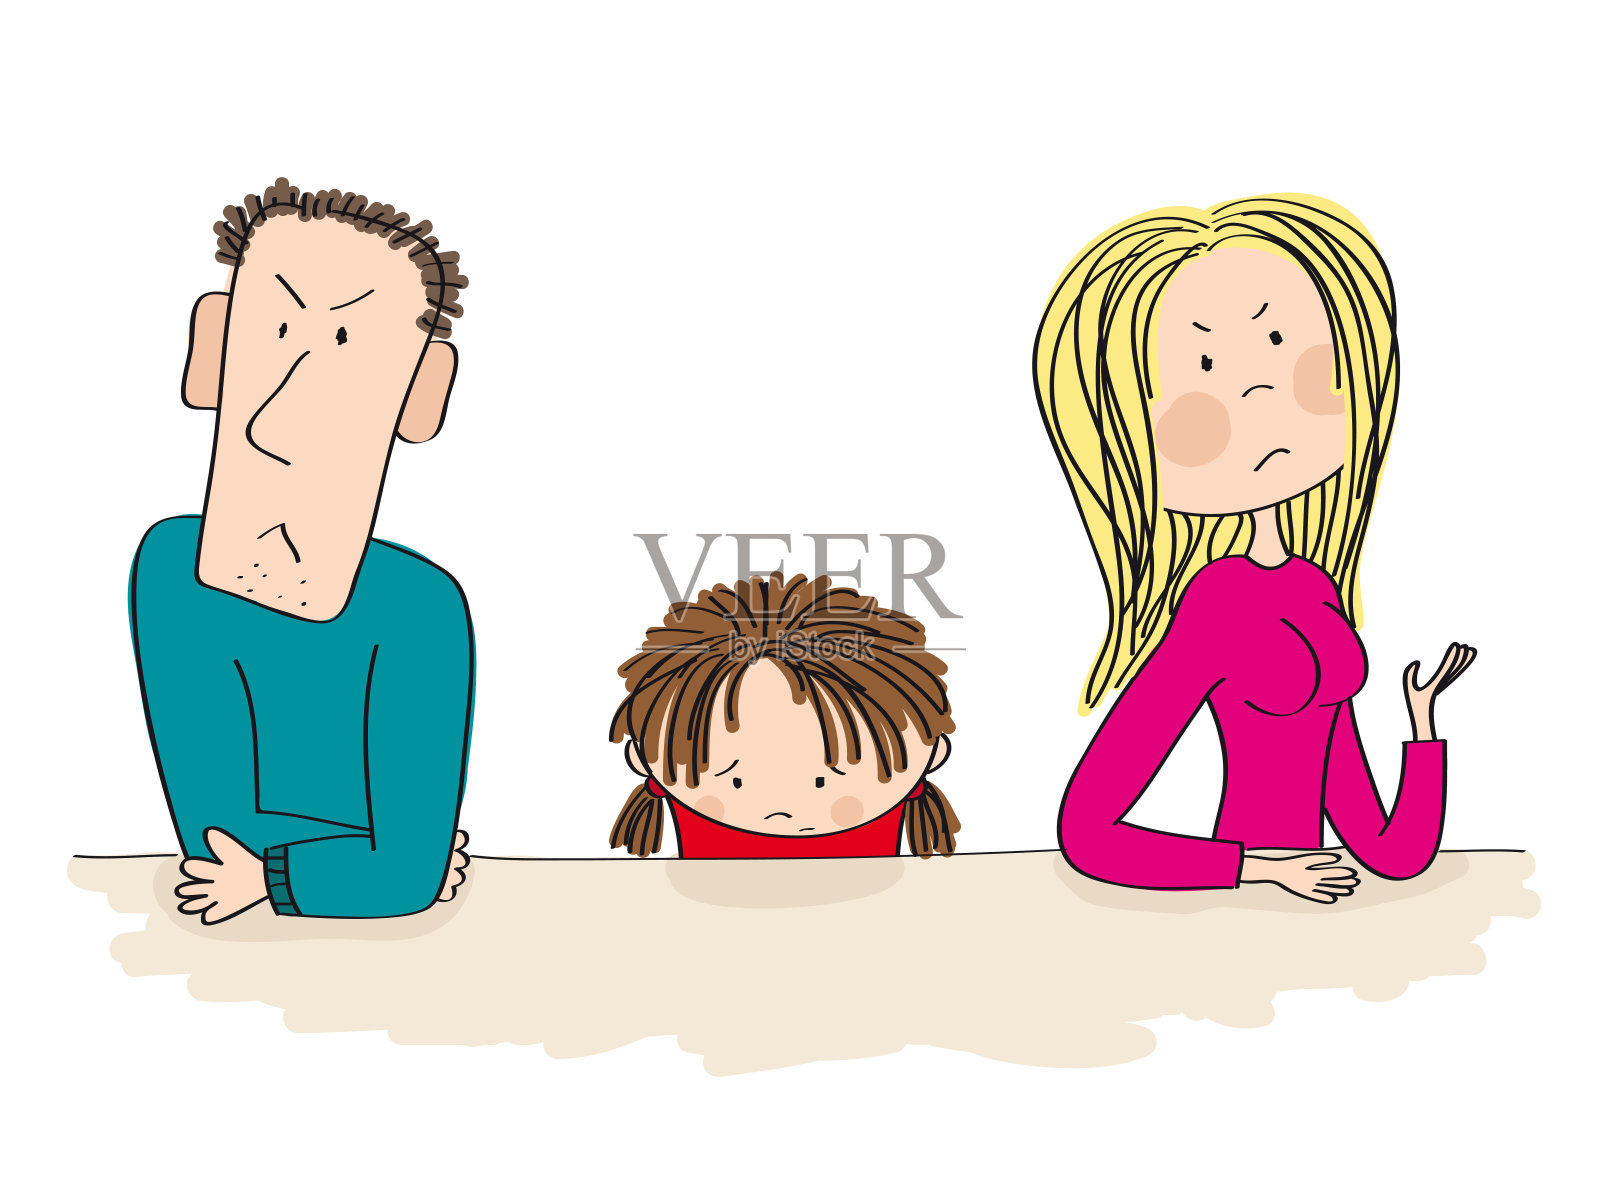 吵架的父母。他们的孩子，小女孩，正坐在他们中间，看起来很伤心，正在考虑离婚。插画图片素材